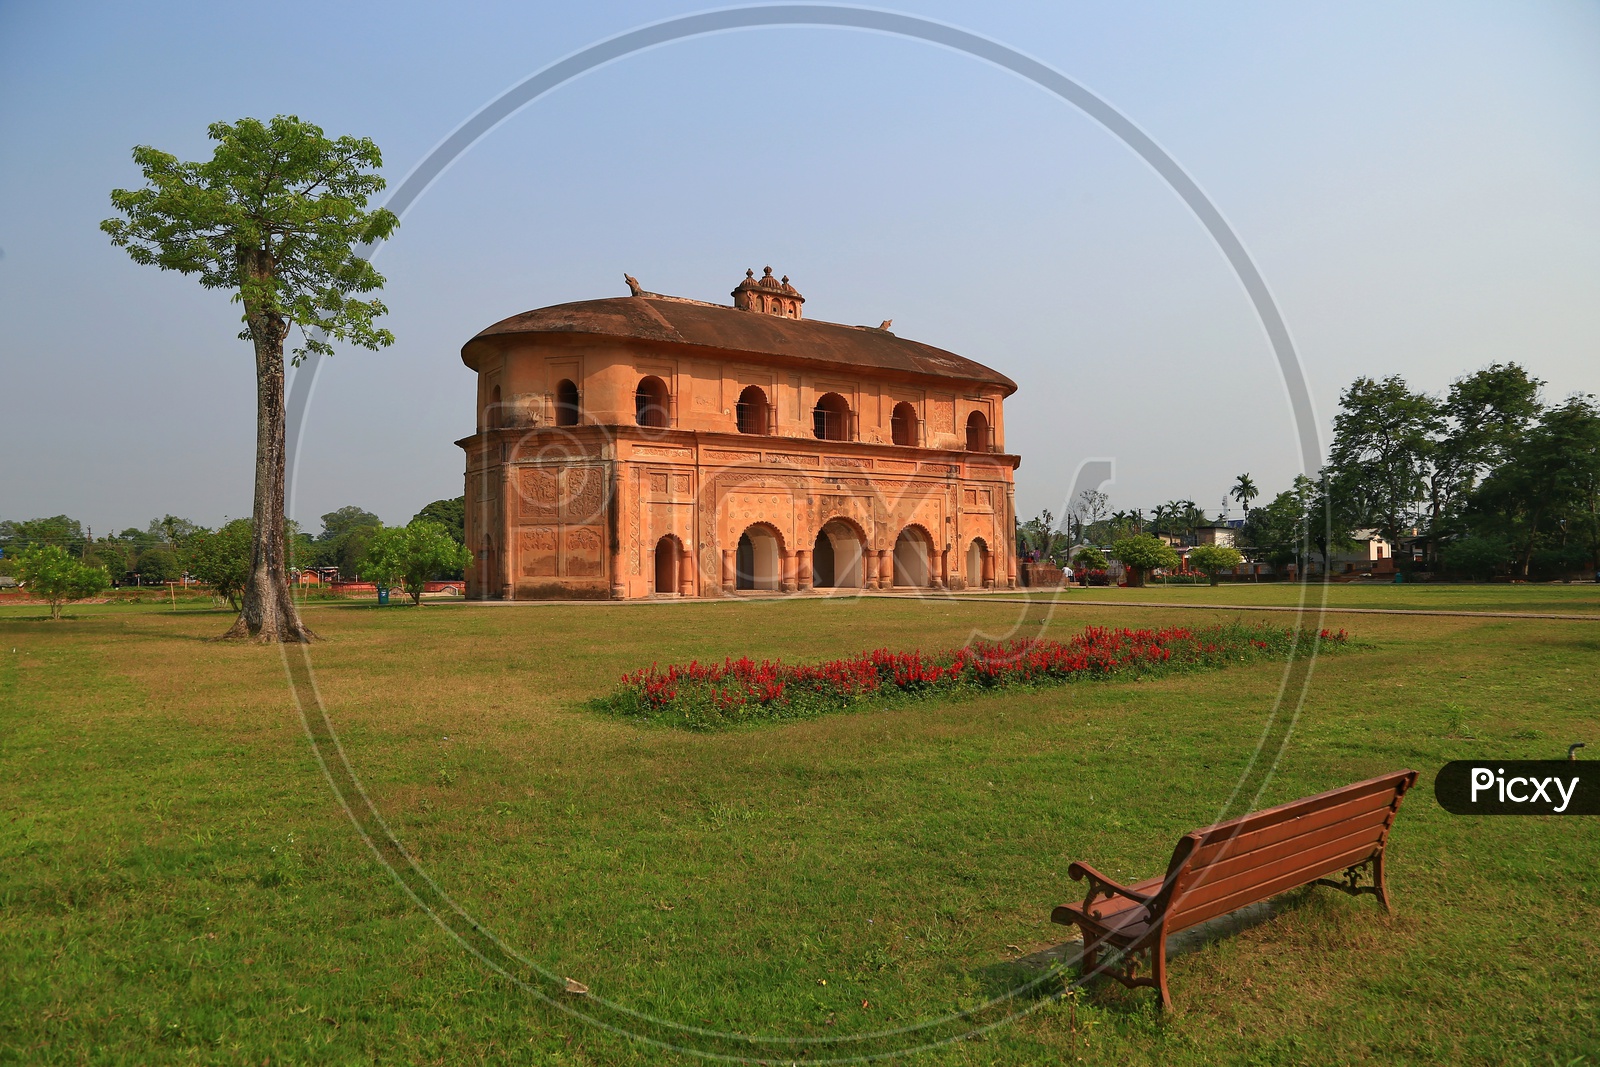 Rang ghar ancient palace